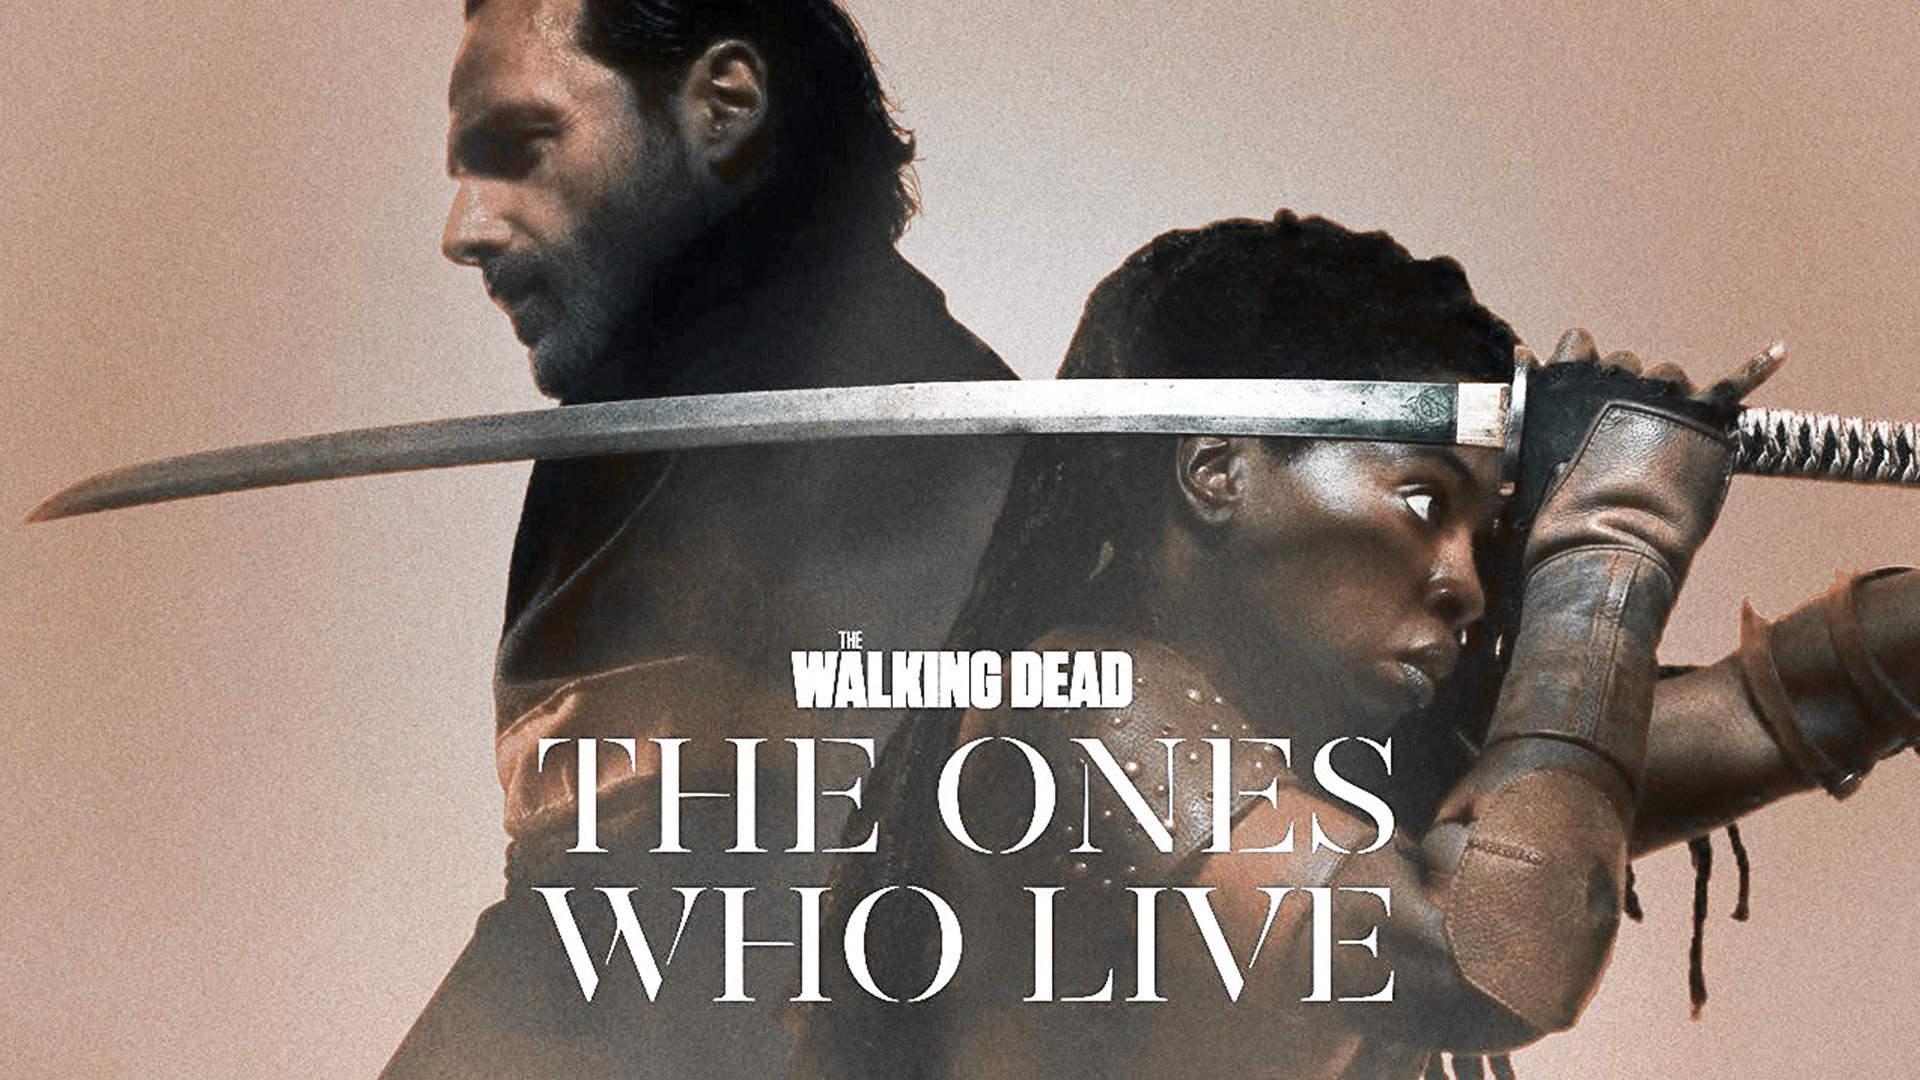 رونمایی از نام سریال اسپین-آف The Walking Dead با تمرکز روی ریک و میشون در تریلر تازه